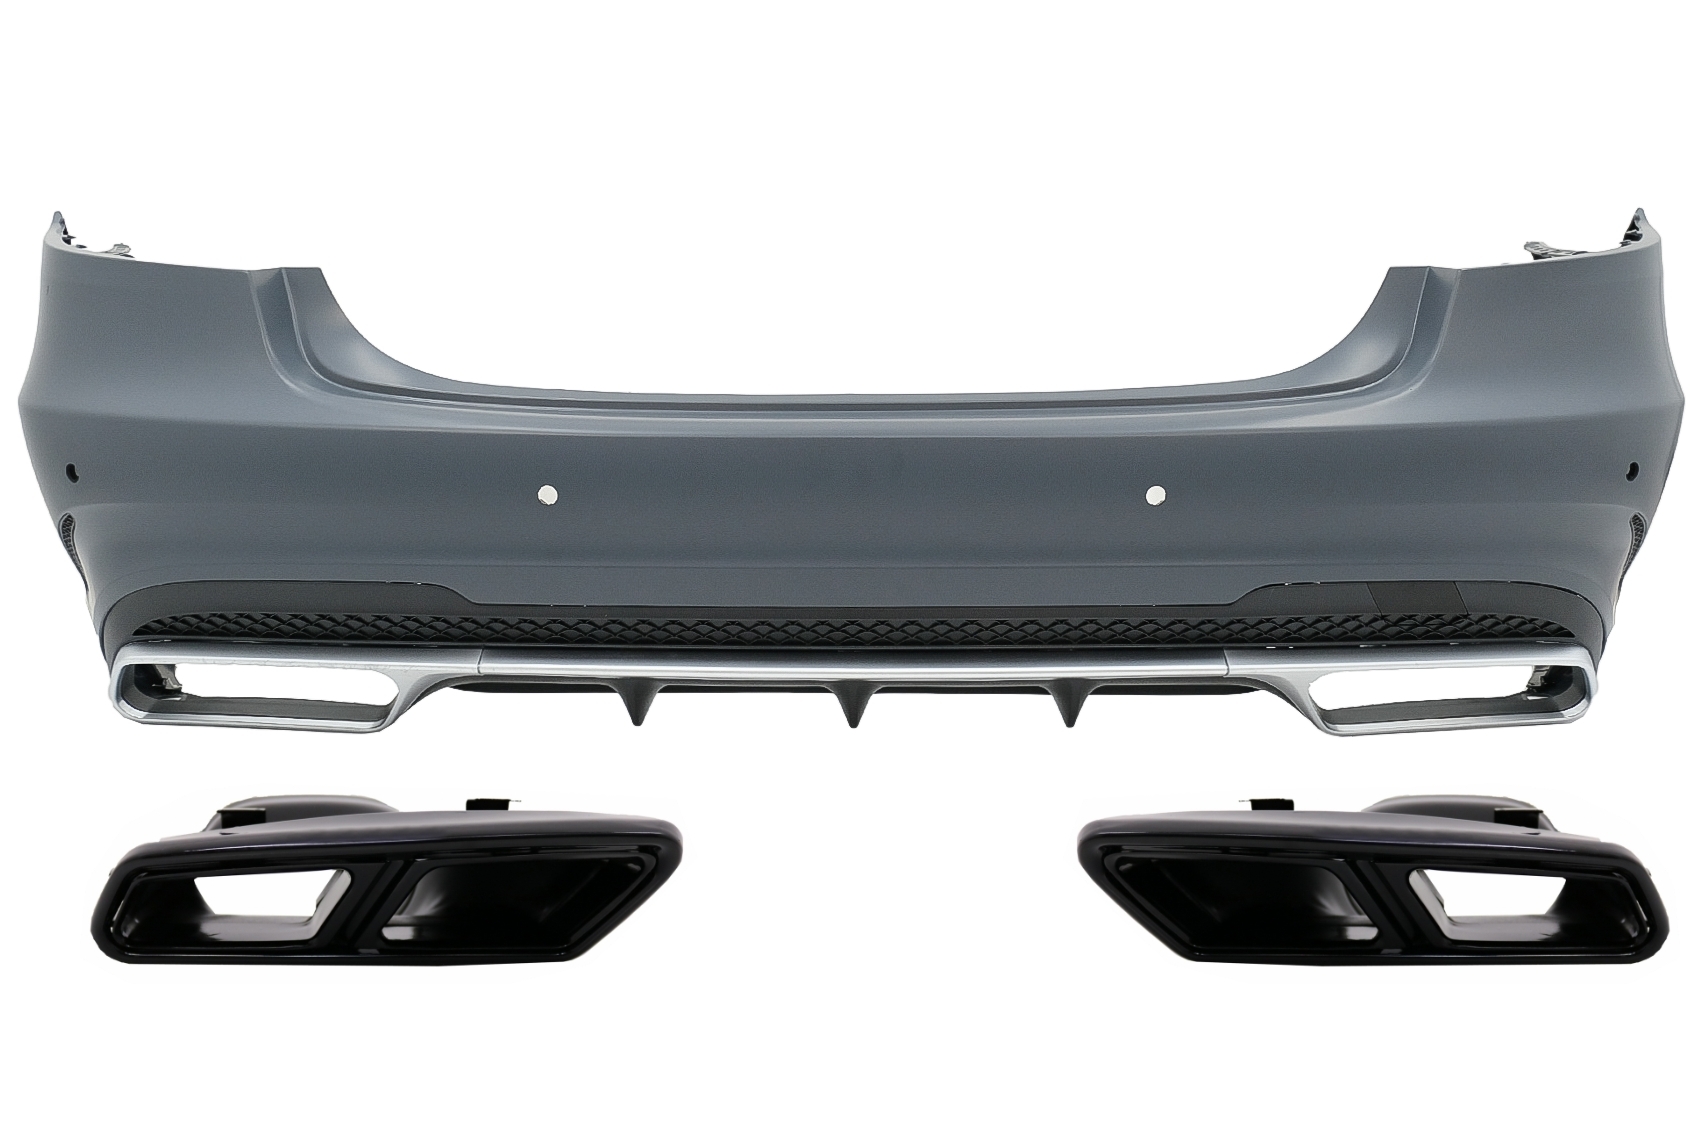 Hátsó lökhárító kipufogó kipufogóvégekkel, Black Edition, alkalmas Mercedes E-osztály W212 Facelift (2013-2016) E63 Designhoz